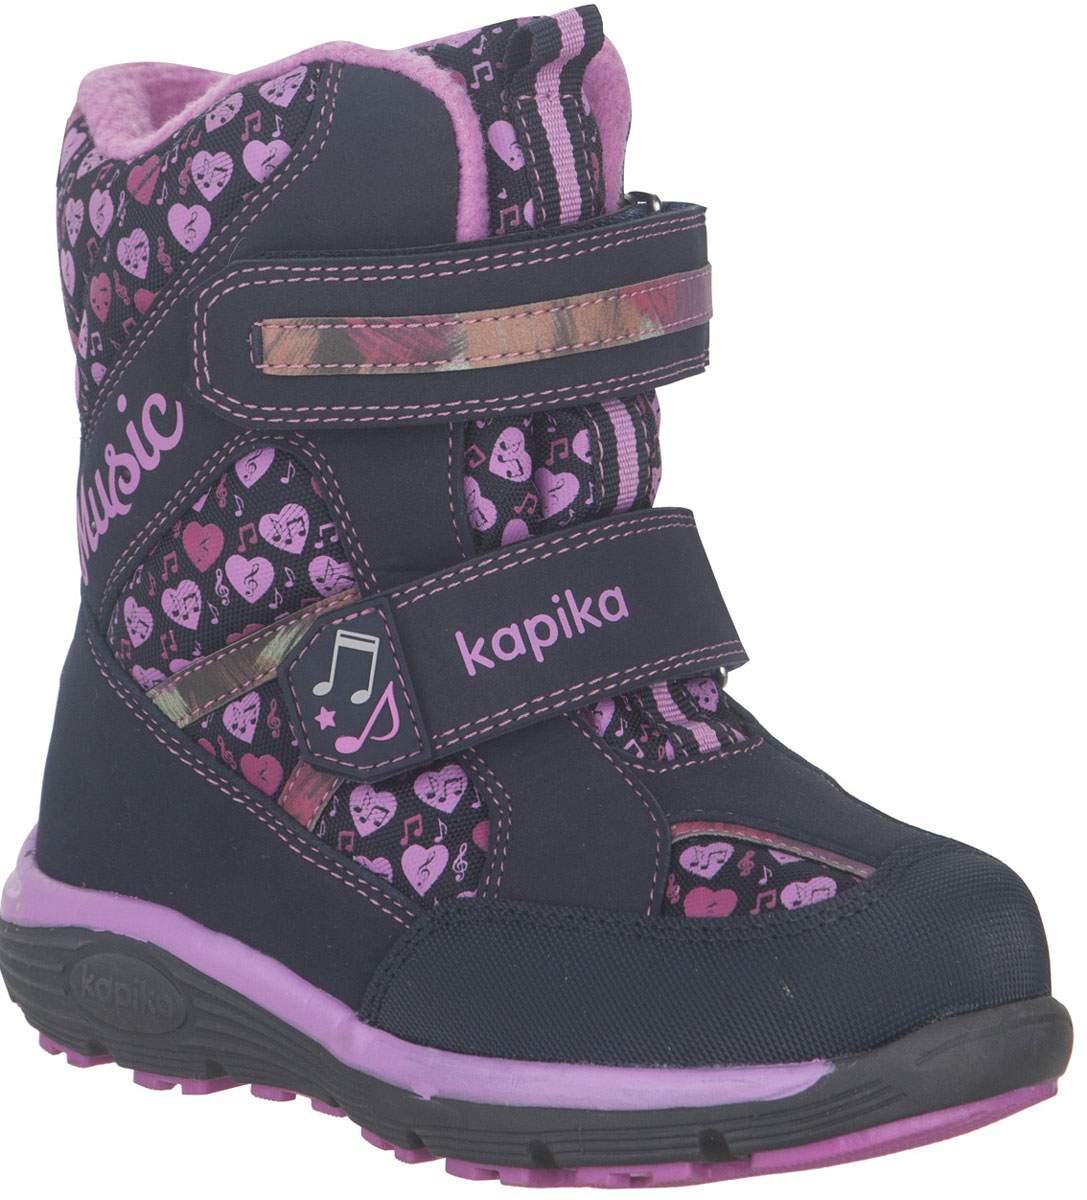 Ботинки для девочки Kapika, цвет: темно-синий, розовый. 43215-1. Размер 32